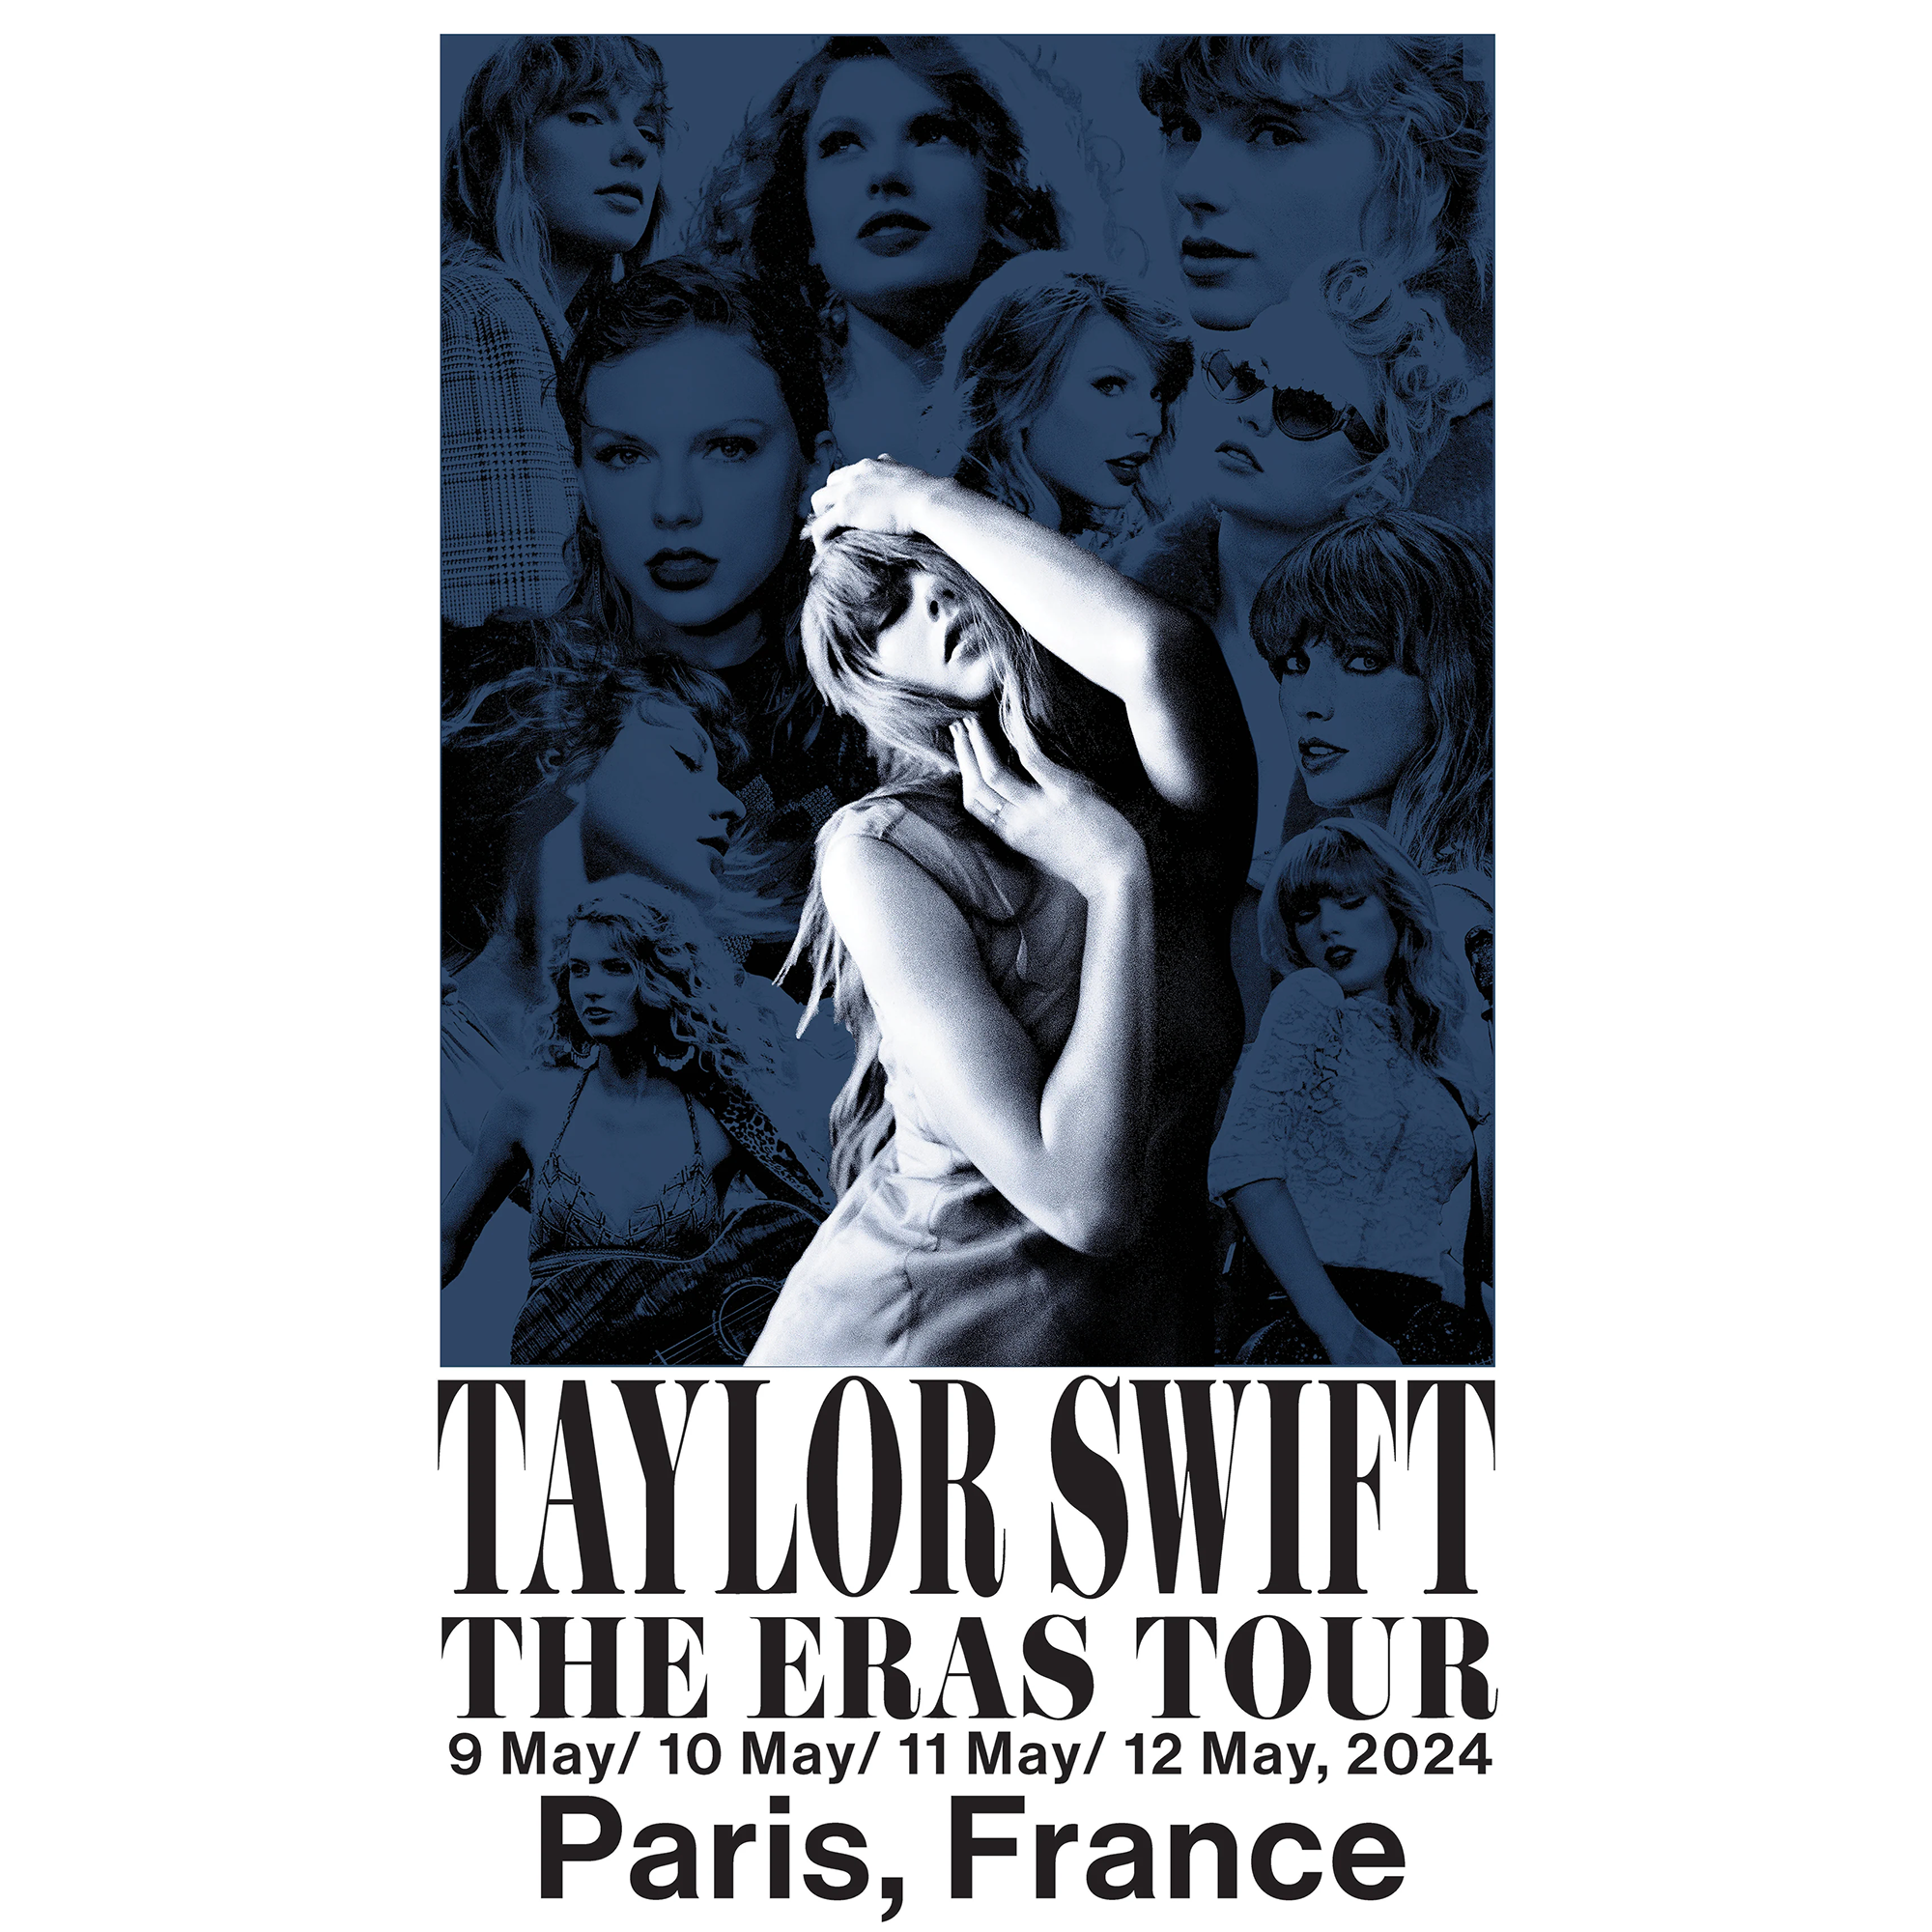 https://images.bravado.de/prod/product-assets/product-asset-data/taylor-swift/taylor-swift/products/507928/web/443738/image-thumb__443738__3000x3000_original/Taylor-Swift-Taylor-Swift-The-Eras-Tour-Paris-France-Poster-Poster-mehrfarbig-507928-443738.f3e3ac65.png